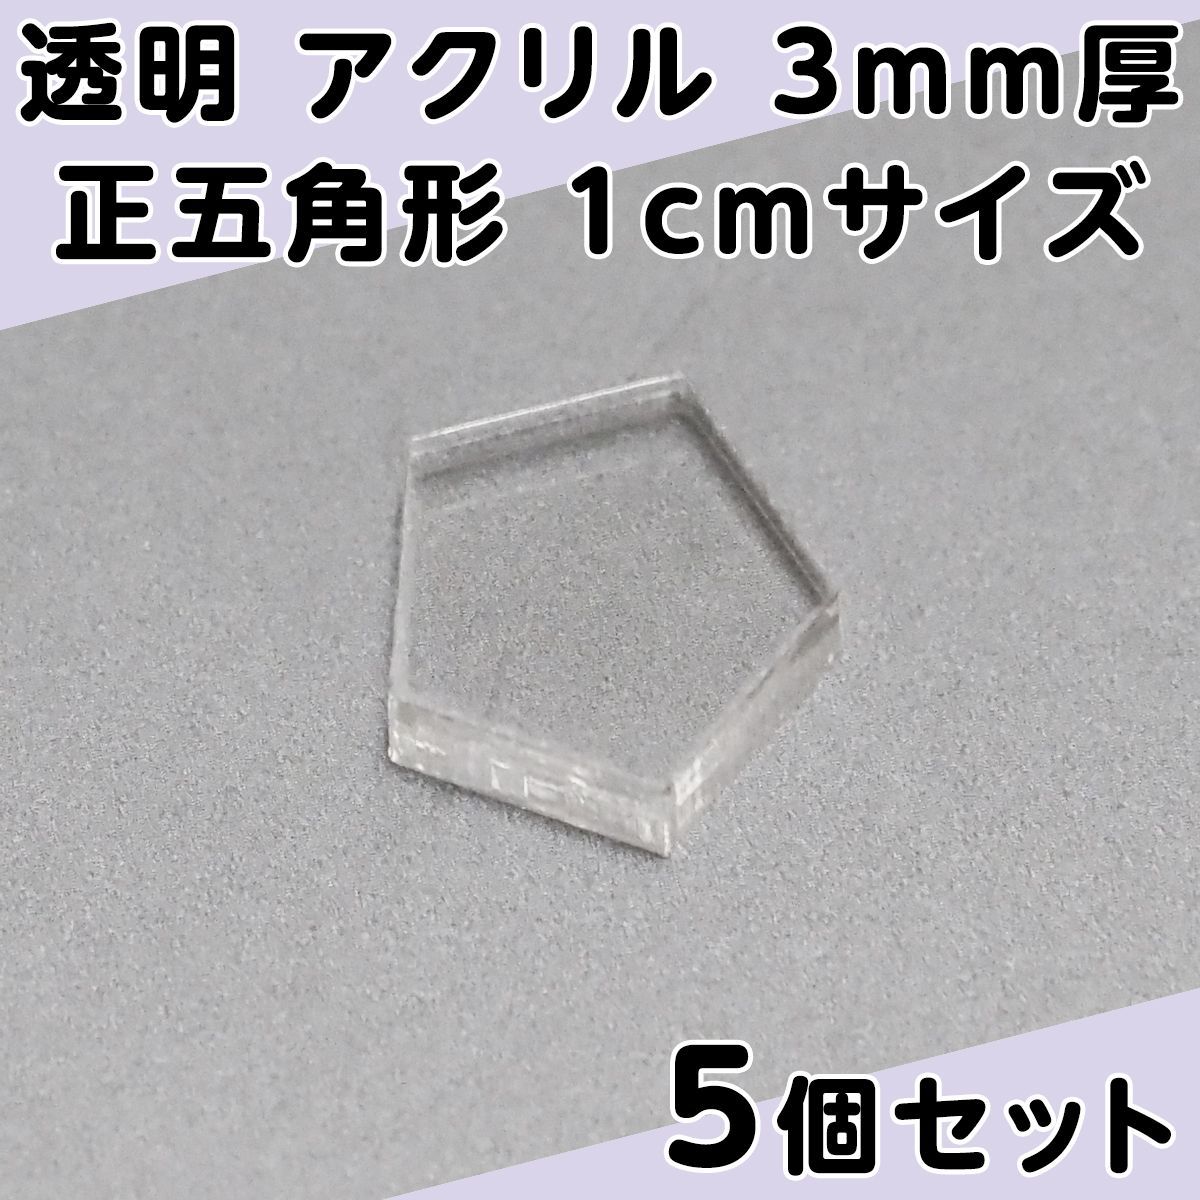 透明 アクリル 3mm厚 正五角形 1cmサイズ 5個セット - メルカリ